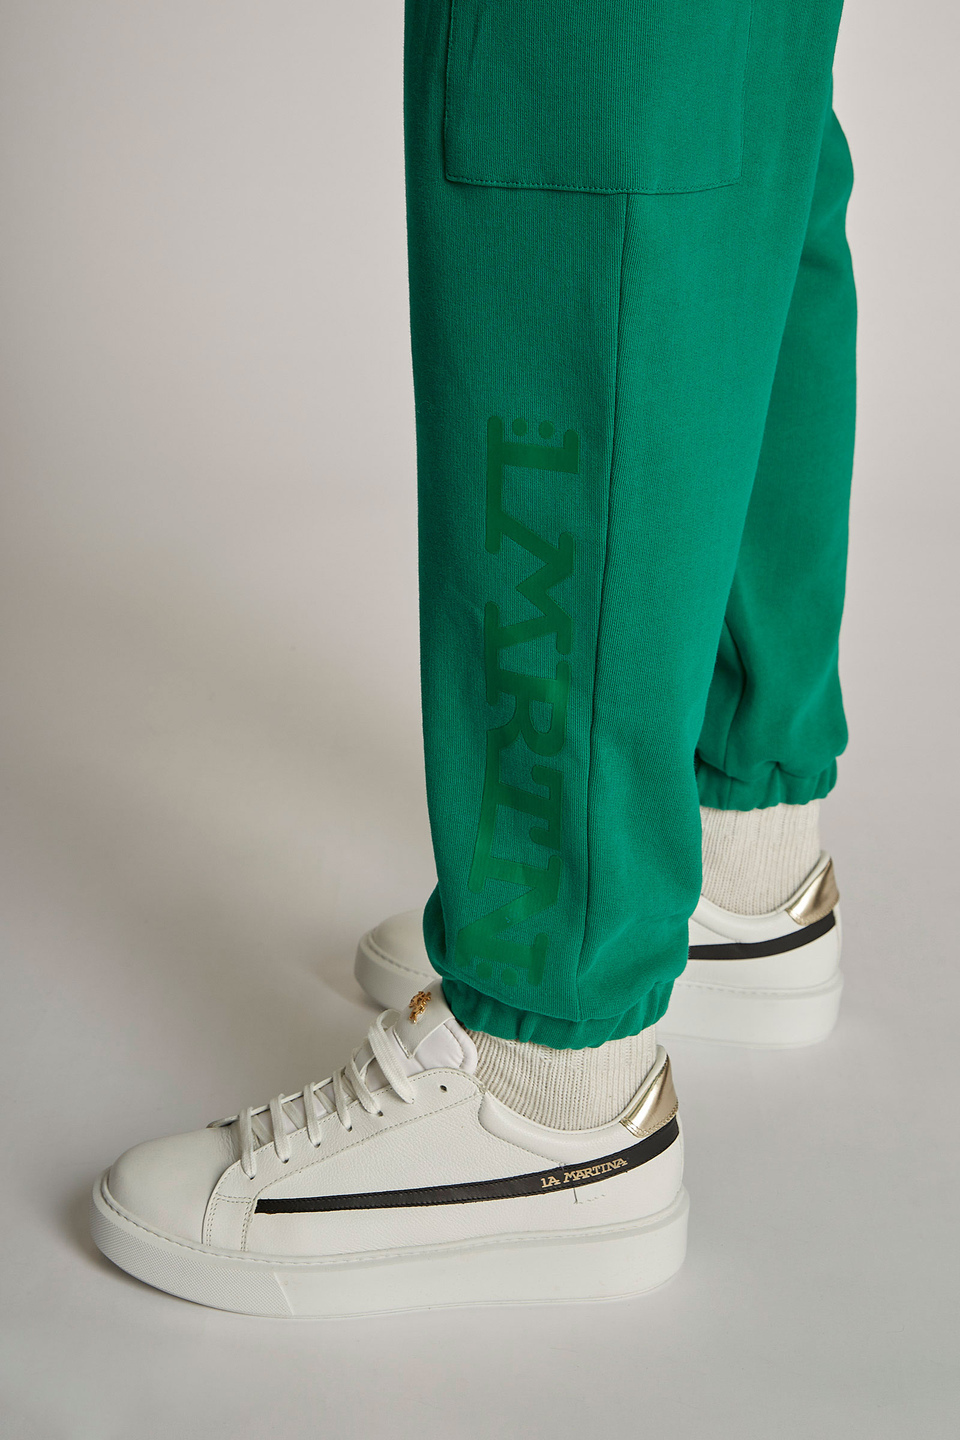 Pantalon homme style jogging en coton coupe oversize - La Martina - Official Online Shop